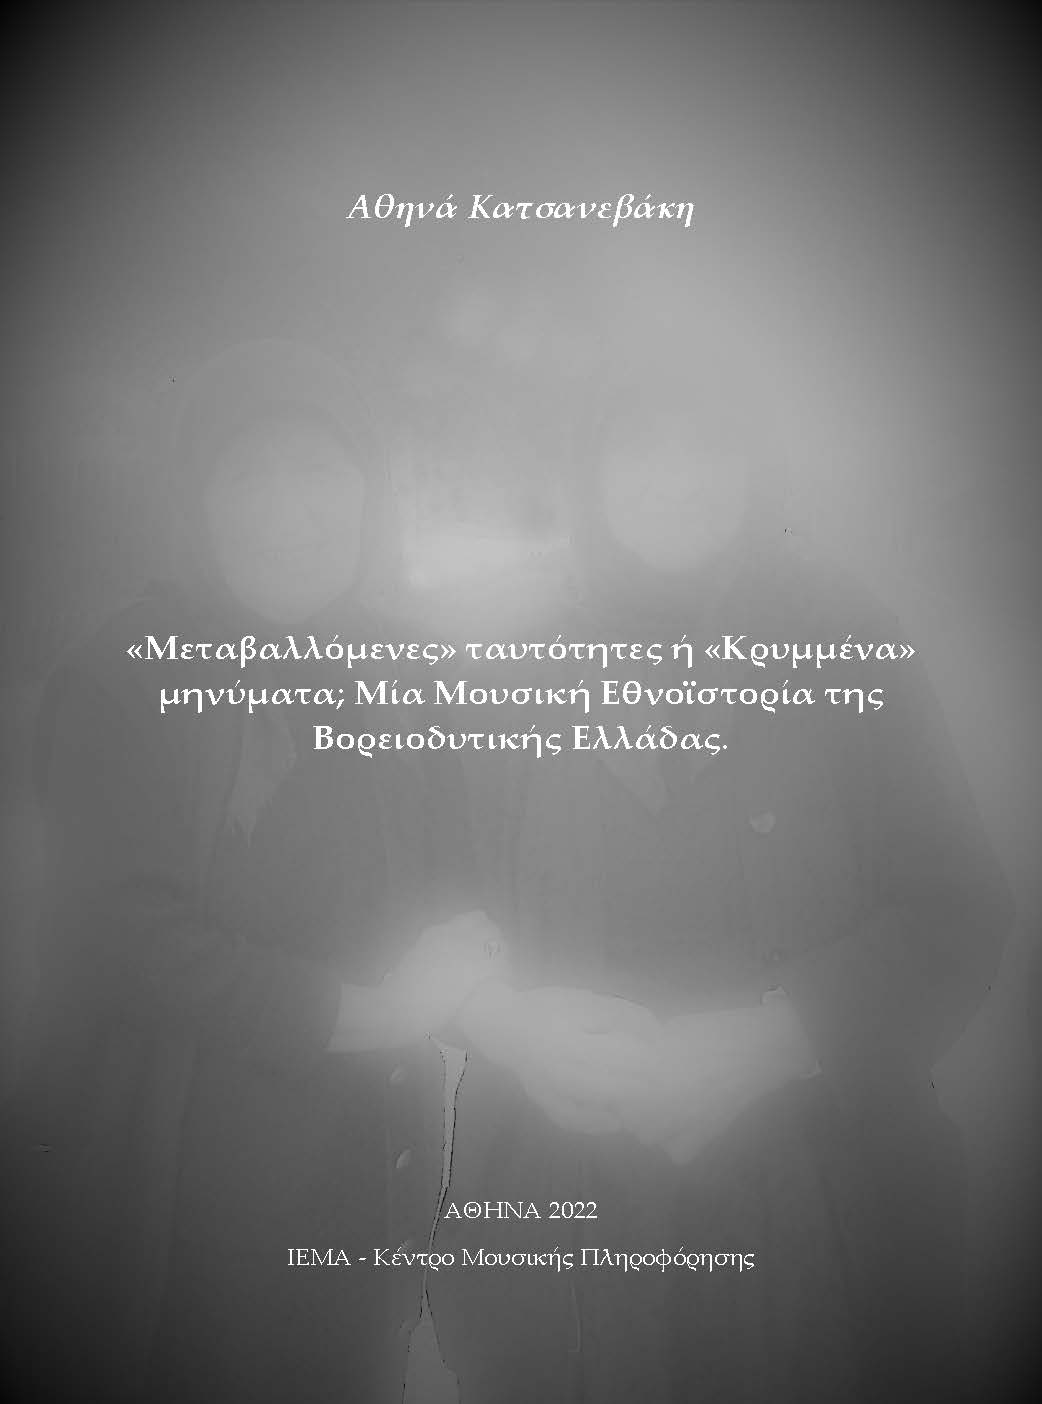 Αθηνά Κατσανεβάκη, «Μεταβαλλόμενες» ταυτότητες ή «Κρυμμένα» μηνύματα; Μία μουσική εθνο-ιστορία της Βορειοδυτικής Ελλάδας